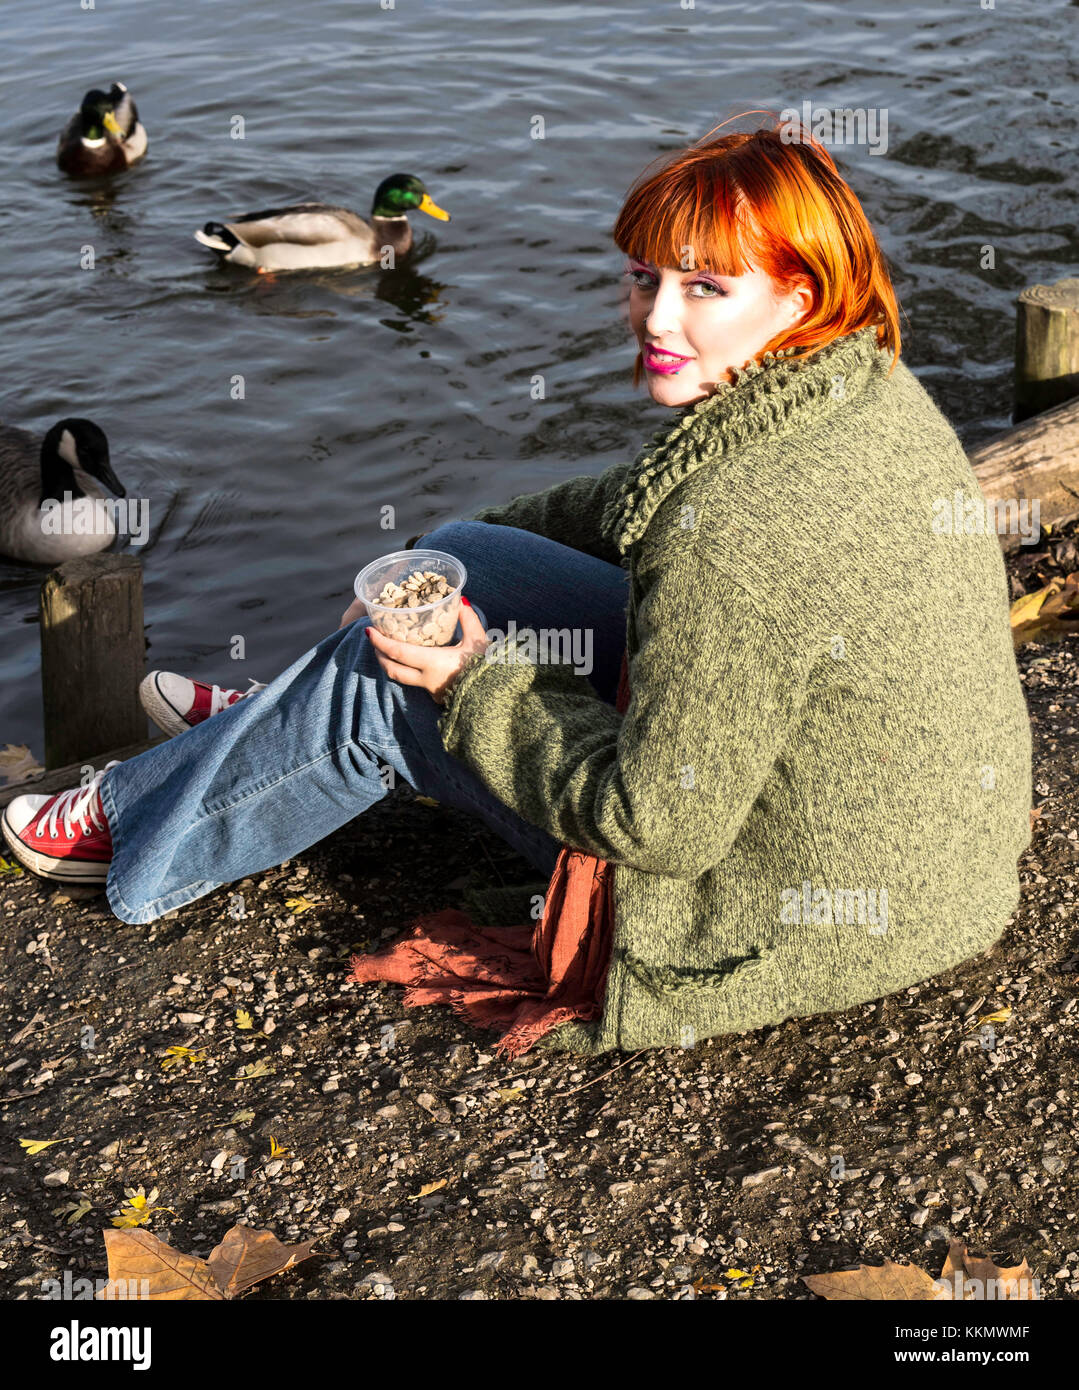 Beautiful girl in park feeding ducks in fall Stock Photo